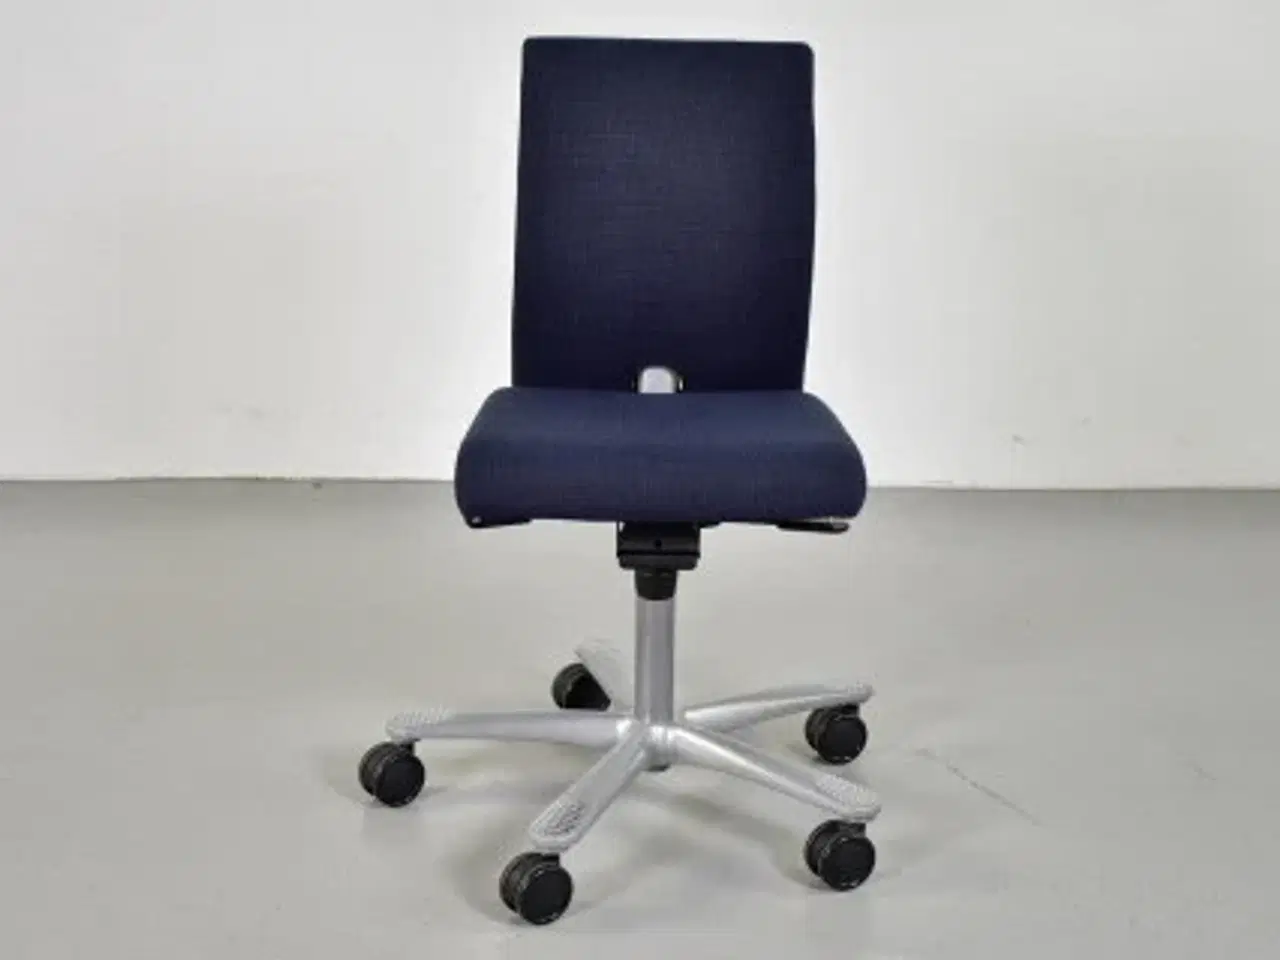 Billede 1 - Häg h04 credo 4200 kontorstol med sort/blå polster og alugråt stel